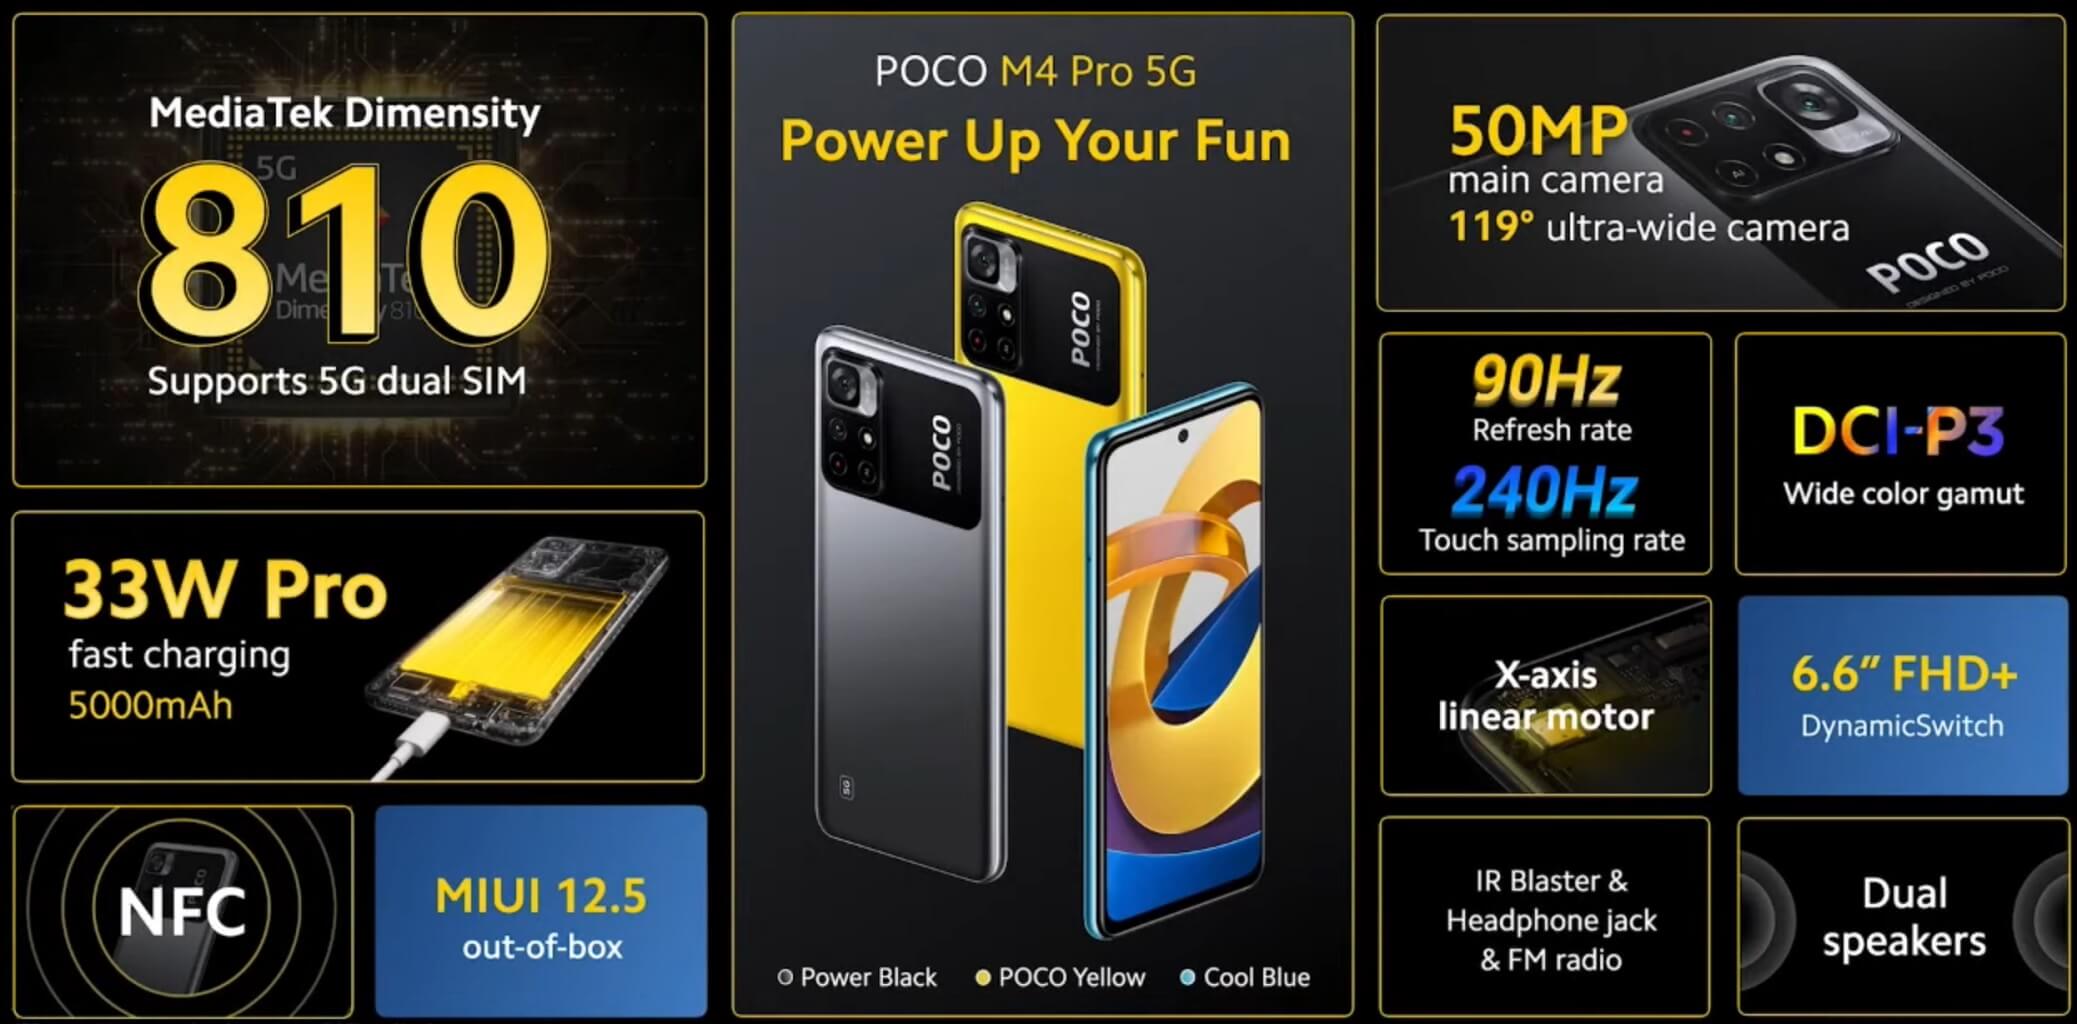 POCO M4 Pro 5G features